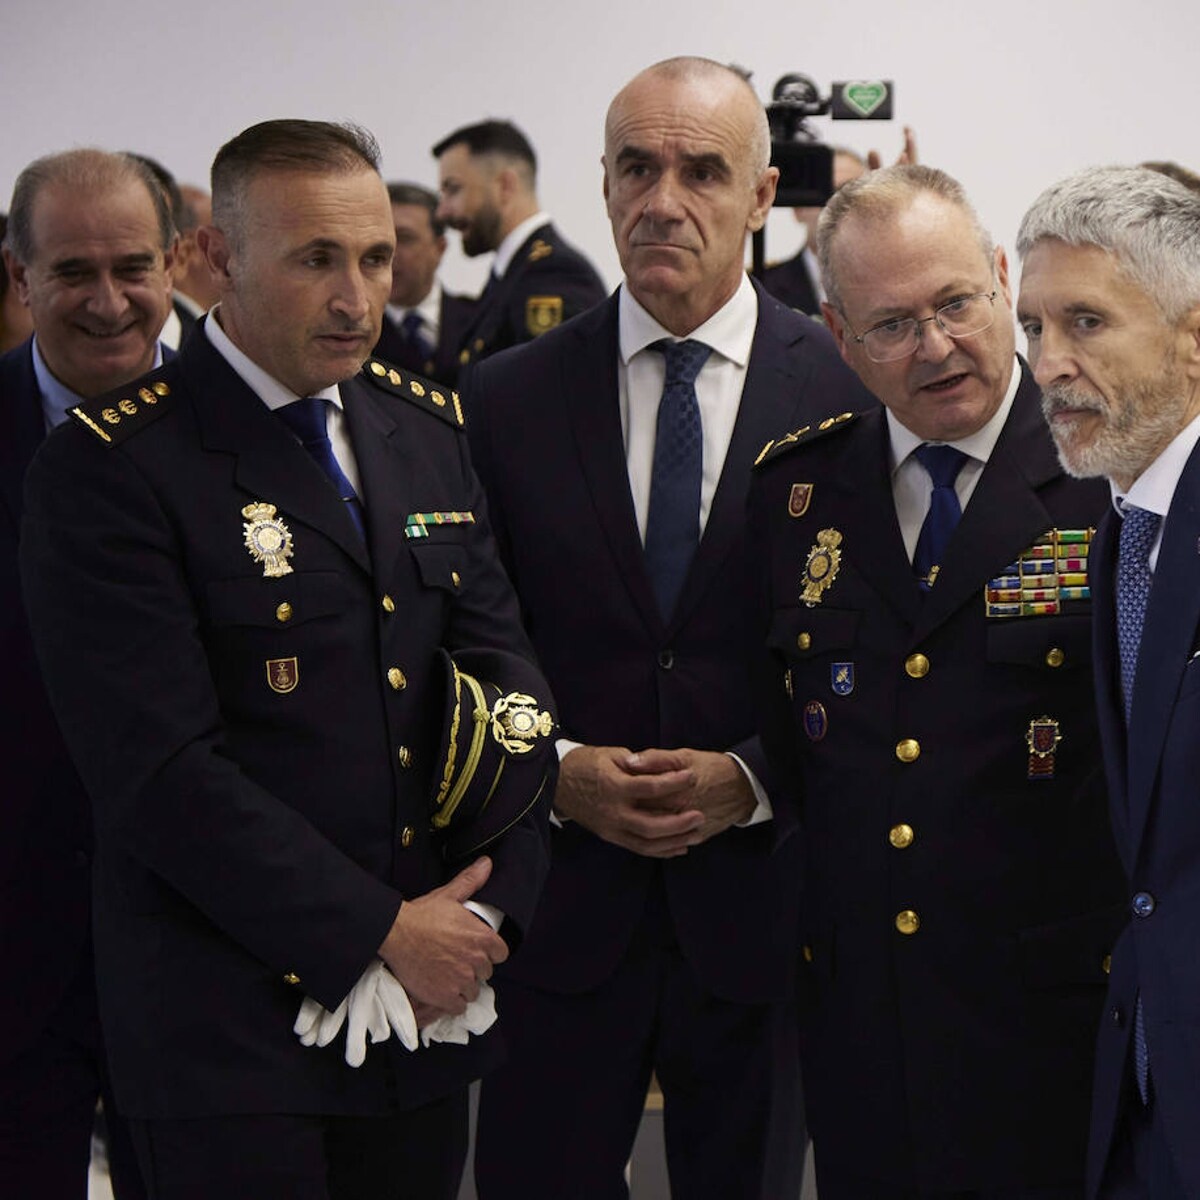 Barcala destaca la entrega y profesionalidad de la Policía Nacional en el  día de su patrón - Alicanteplaza